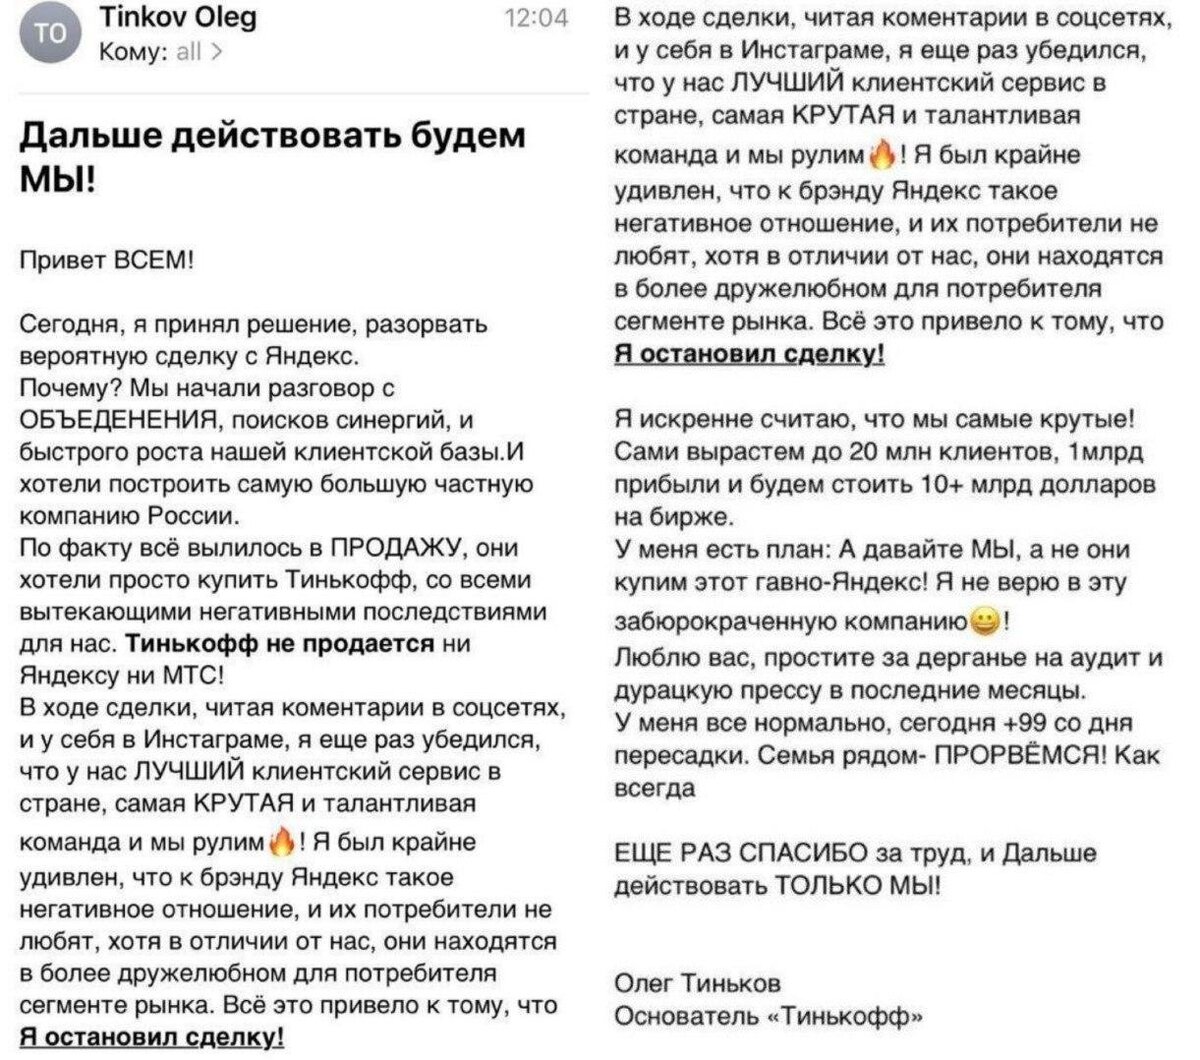 Письмо Тинькова, опубликованное в Телеграм-каналах